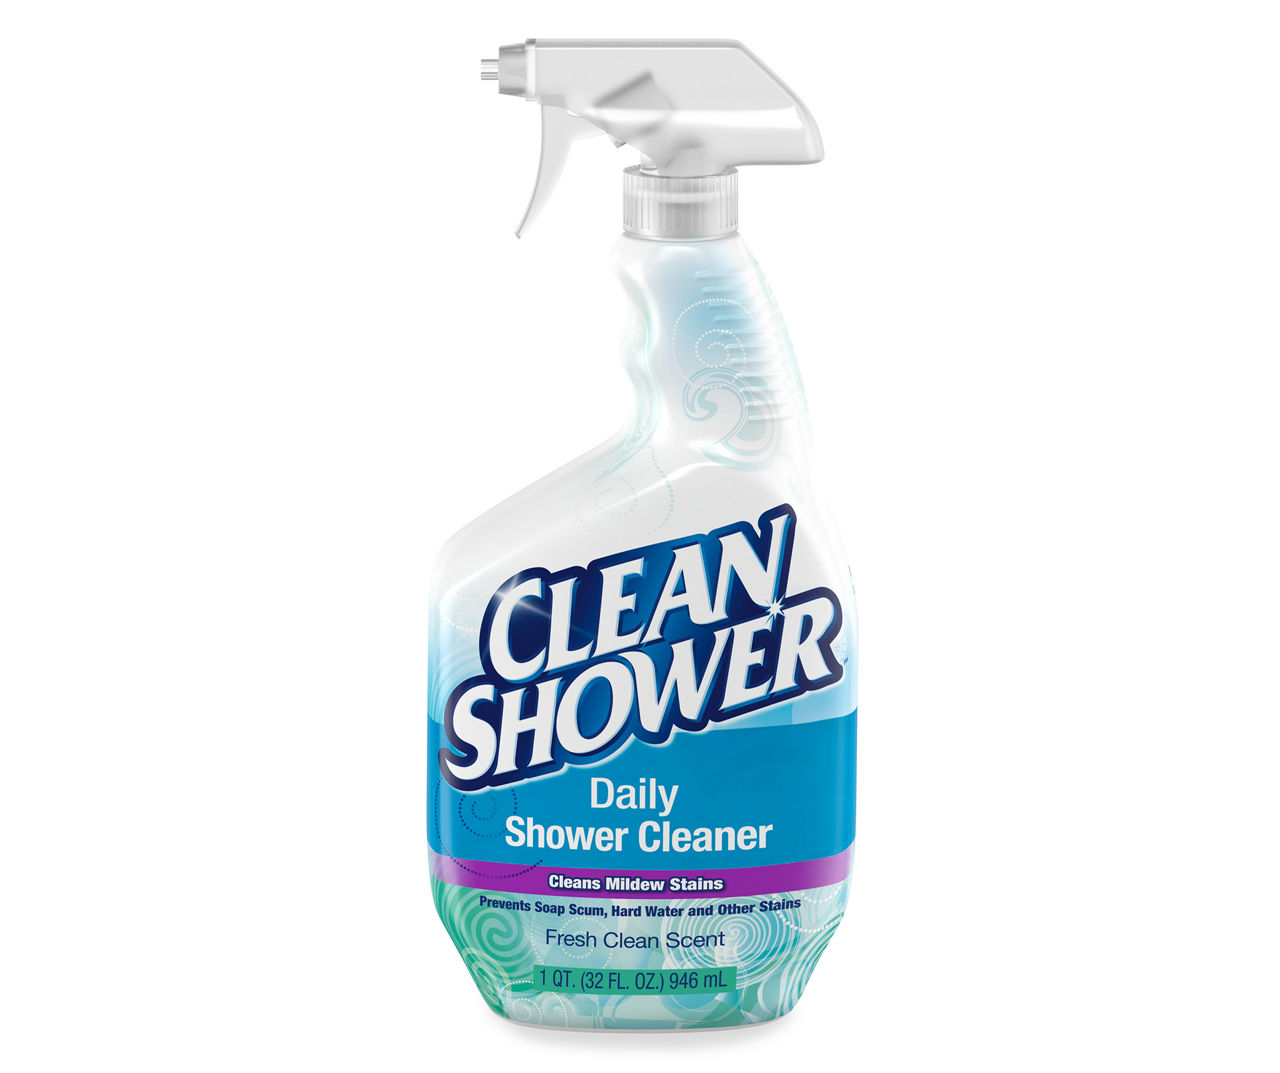 Clean Shower Clean Shower Daily Shower Cleaner 1 qt. Trigger Spray